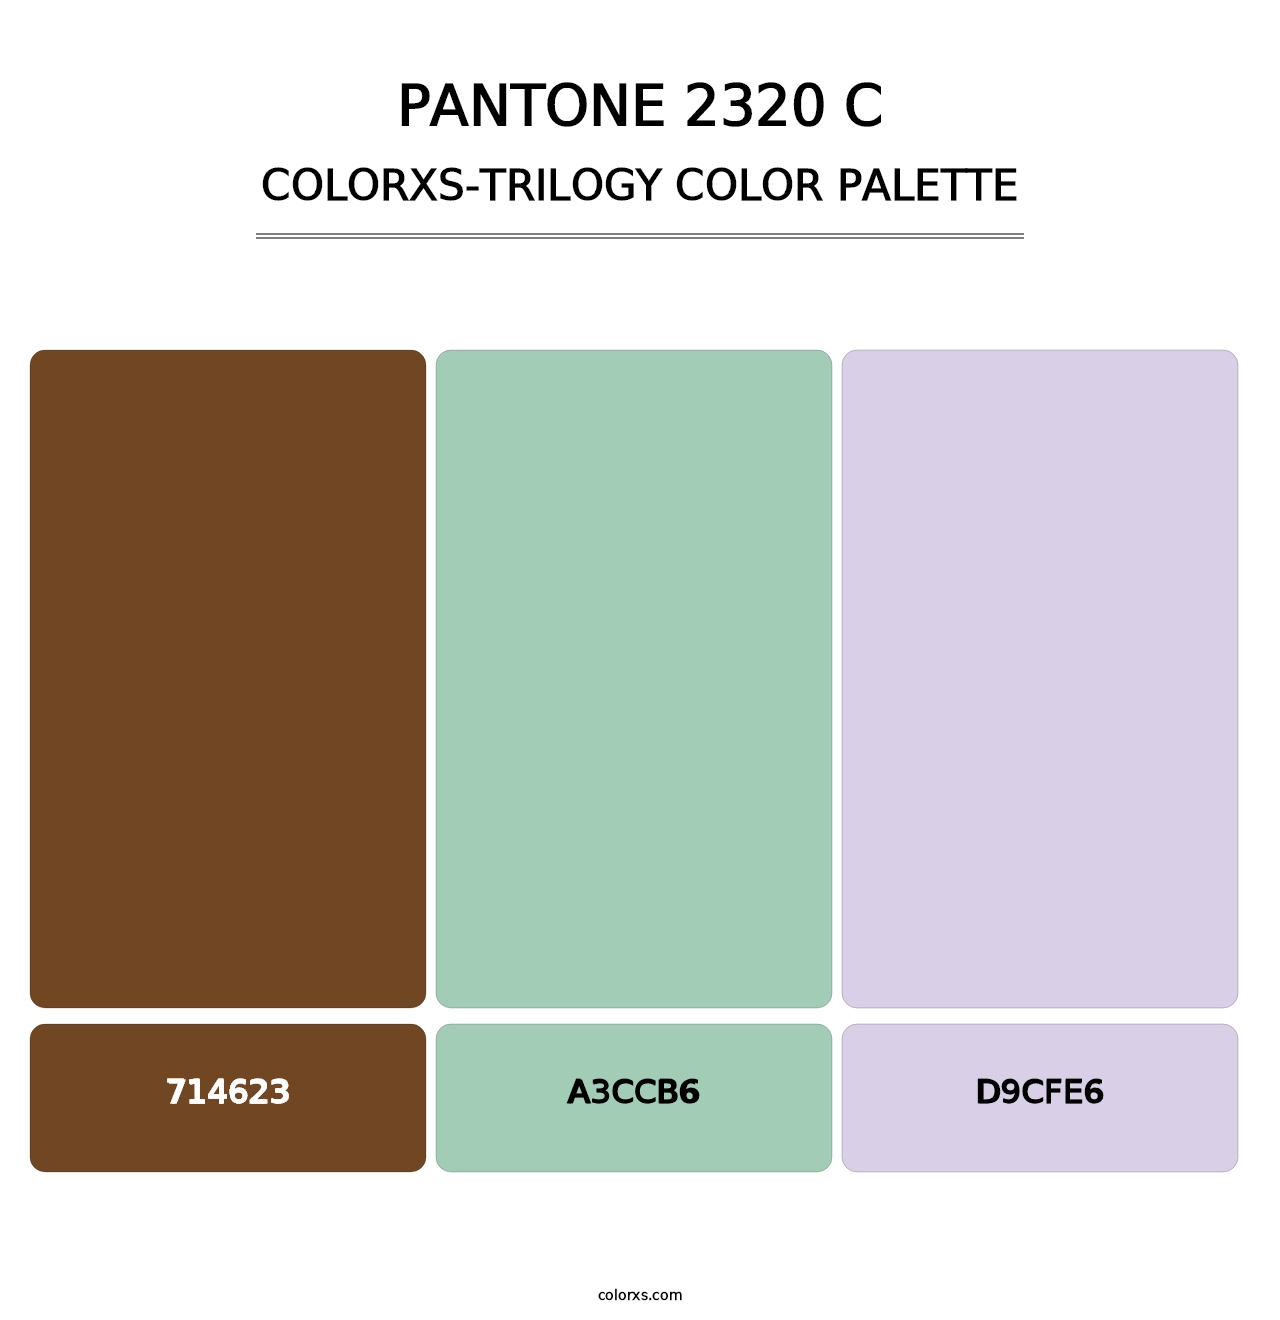 PANTONE 2320 C - Colorxs Trilogy Palette